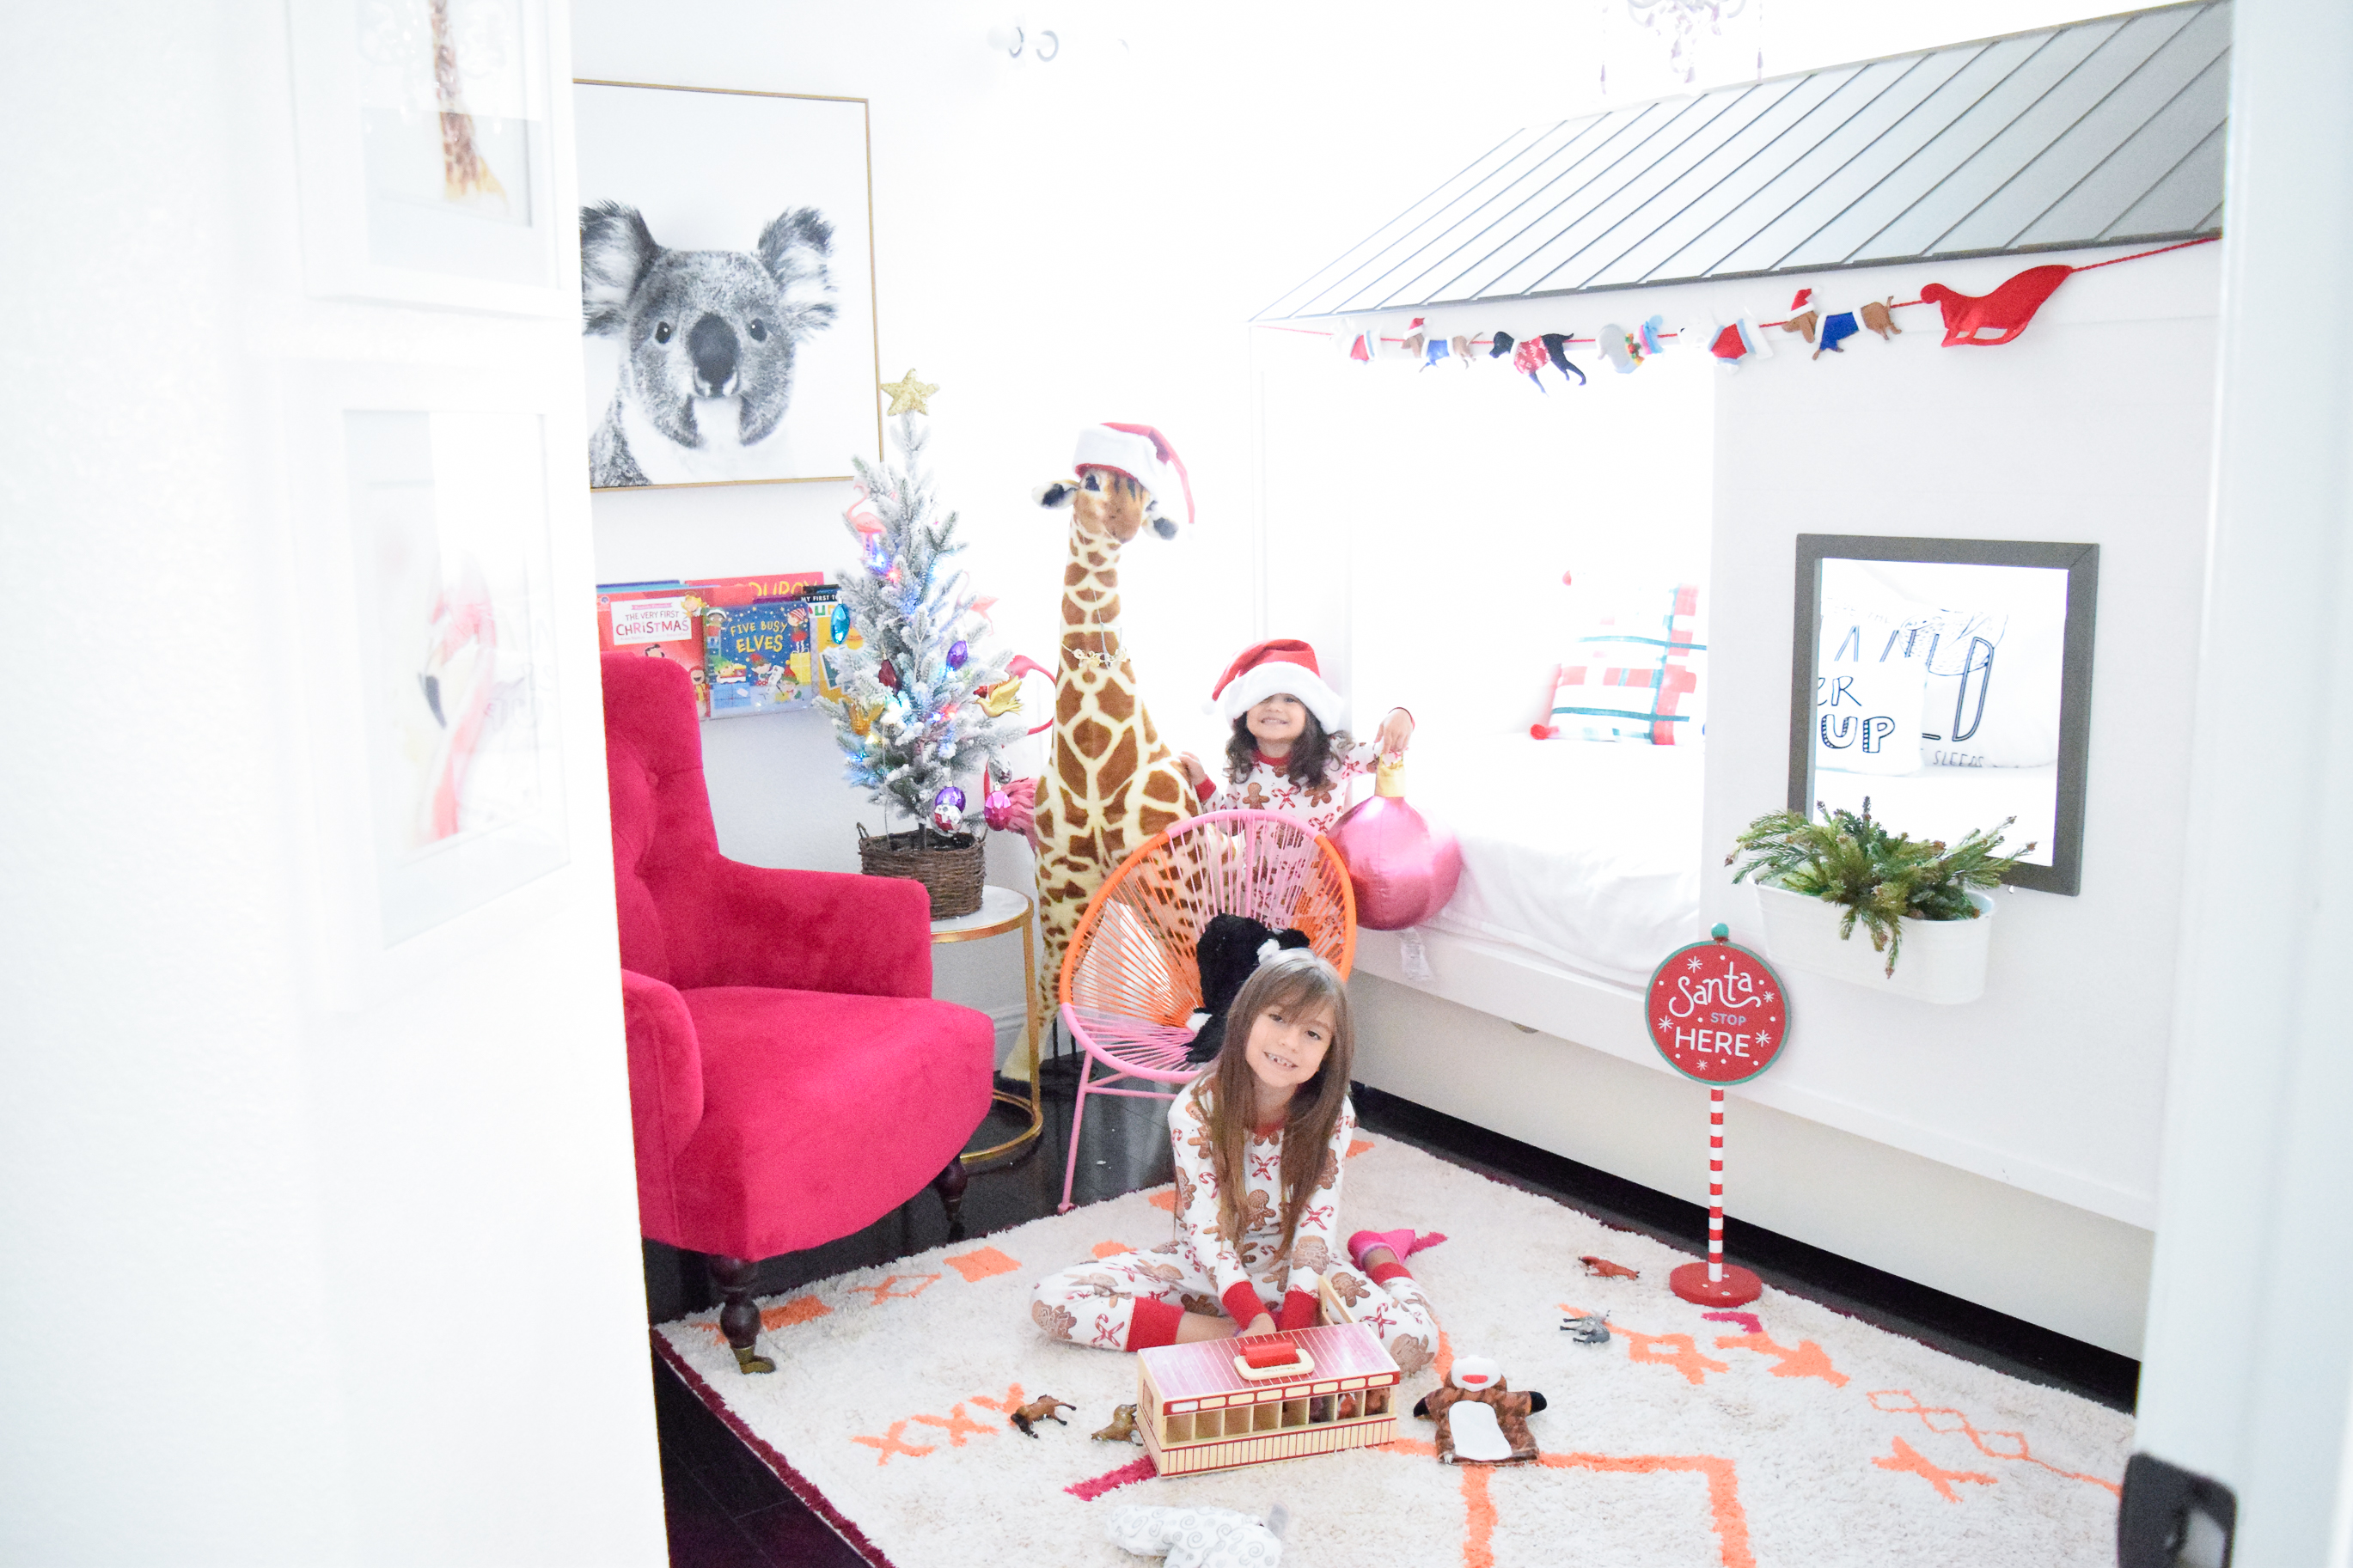 Melissa&Doug-Take Back Childhood-holiday gift guide-kids-children-toys-2018-#takebackchildhood-Operation Less Screen Time For Kids-girls modern room-decor for kids-girls room